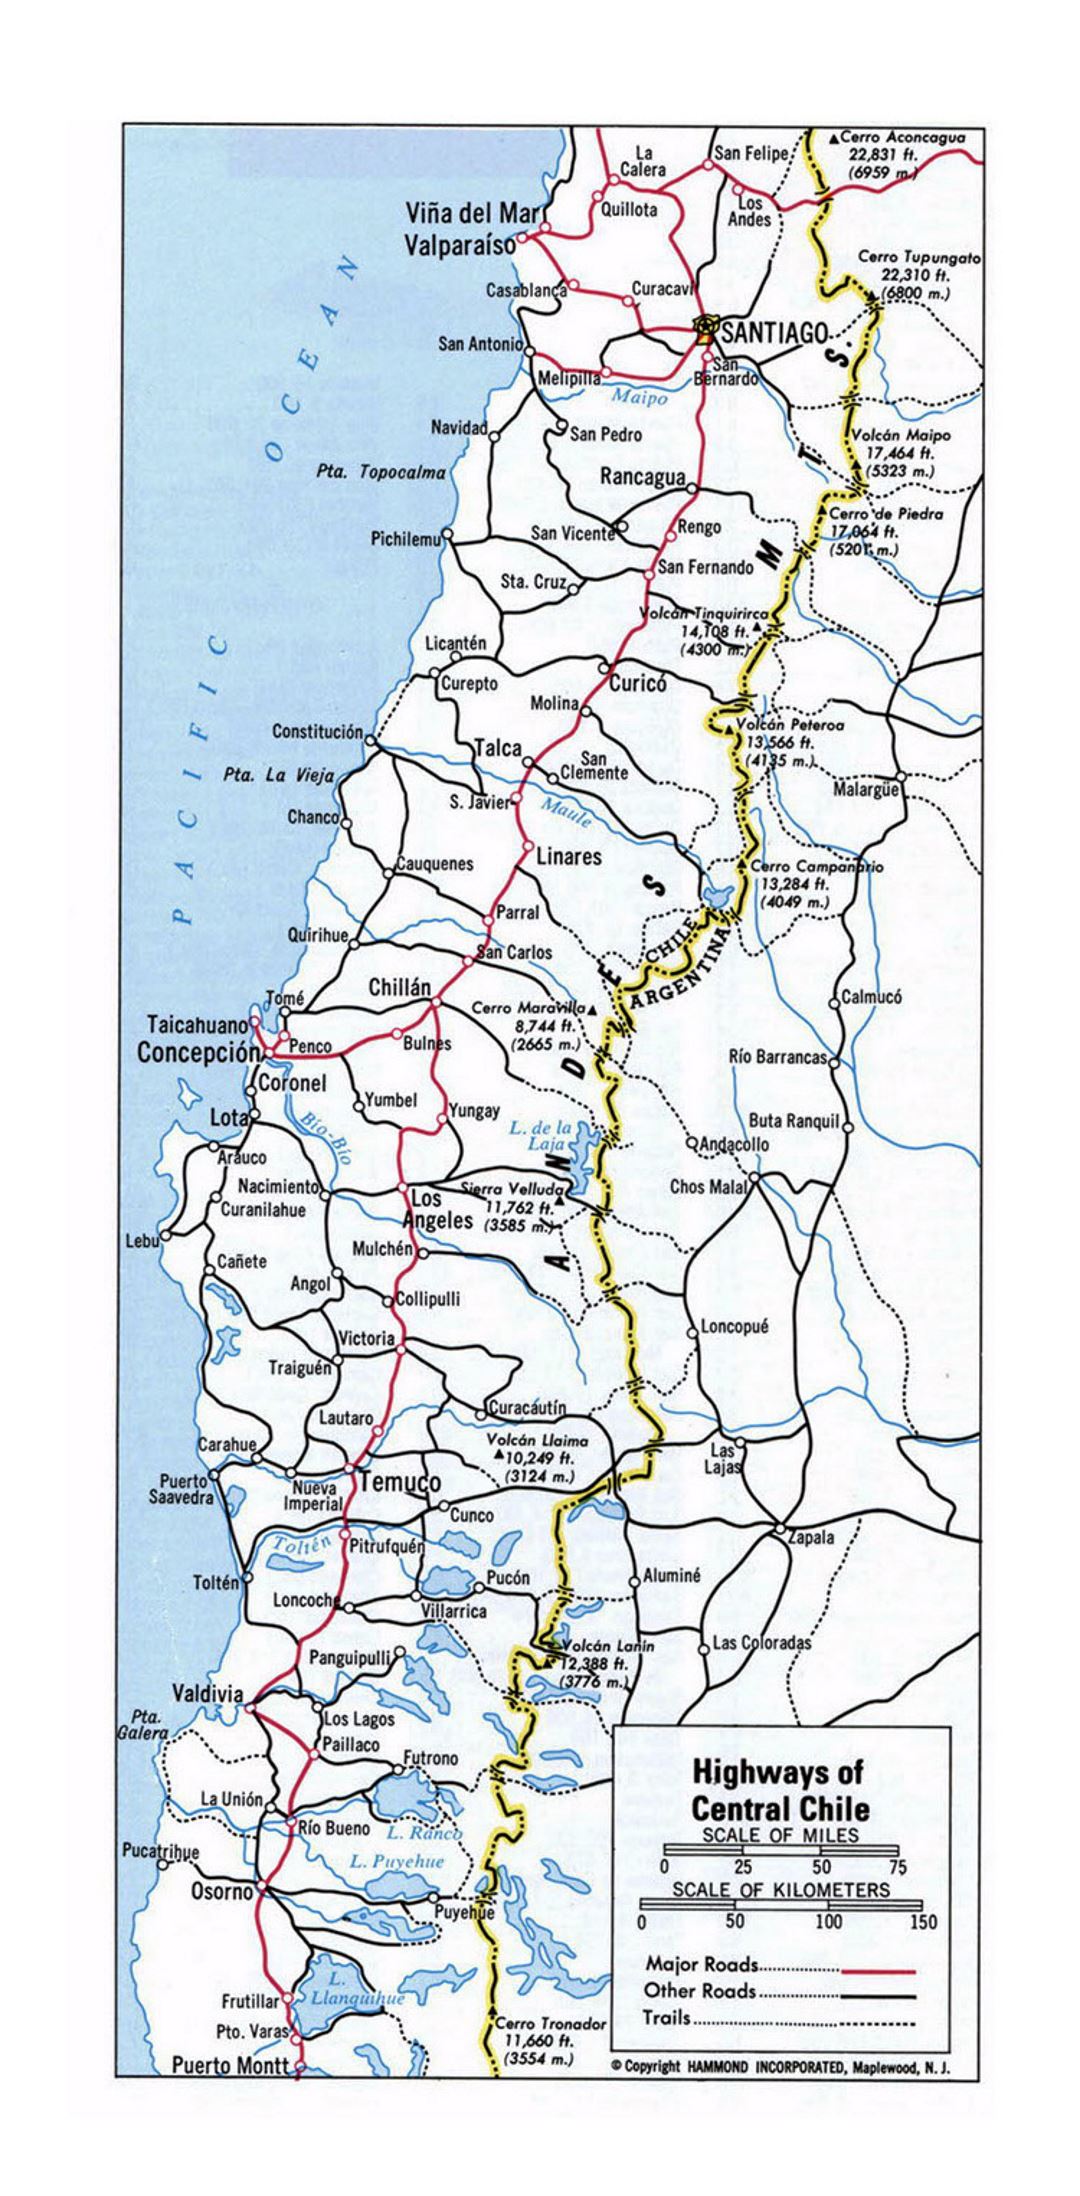 Детальная карта автомобильных дорог Центрального Чили